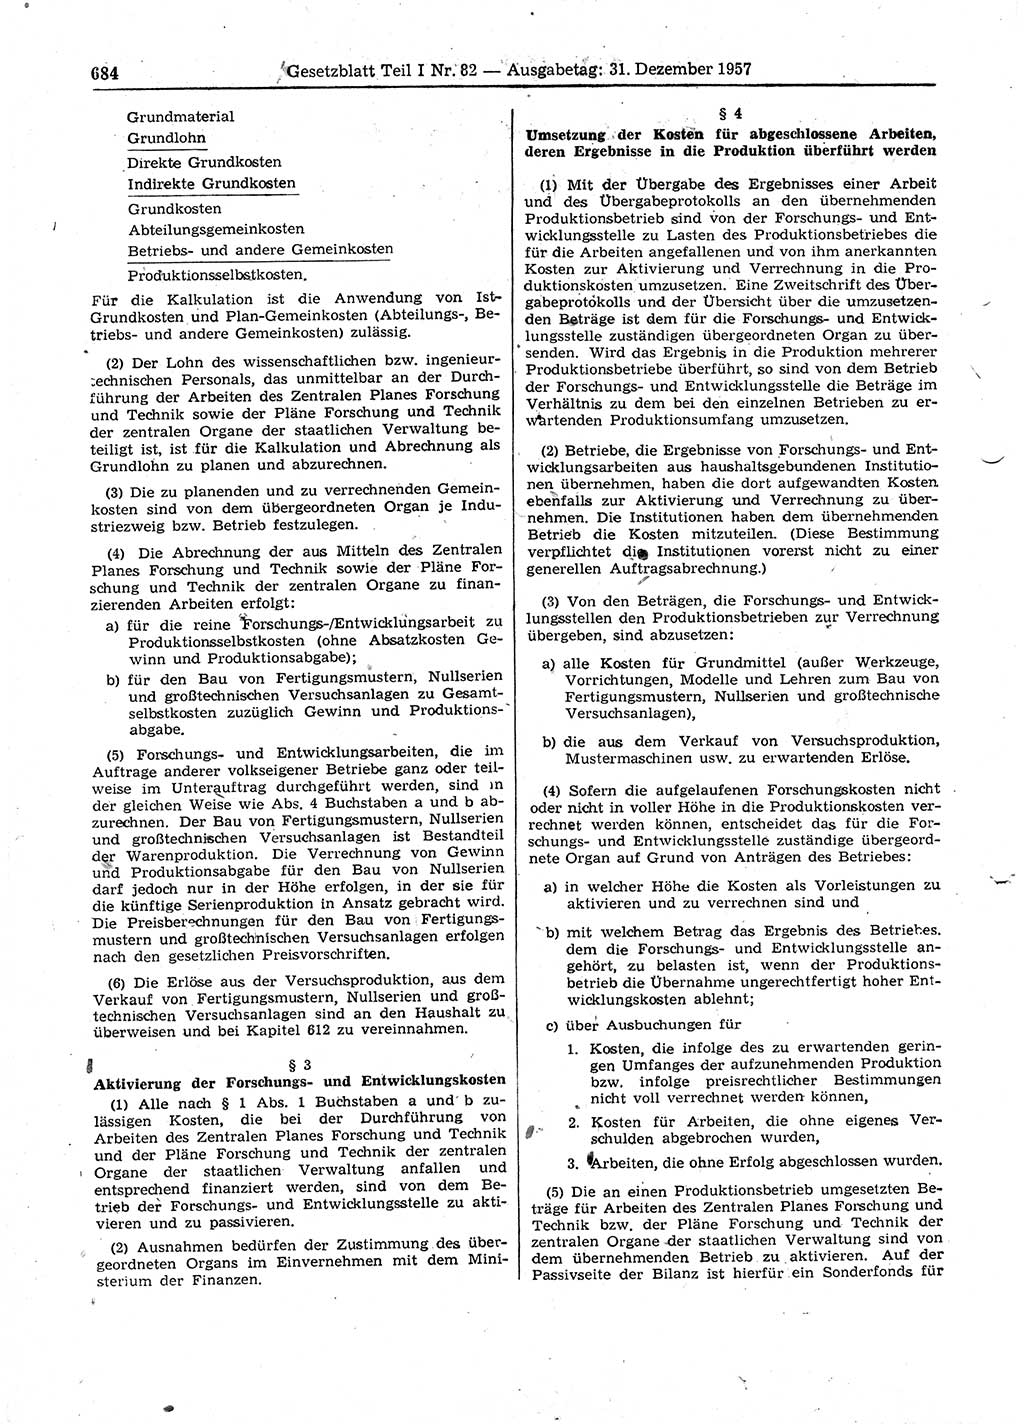 Gesetzblatt (GBl.) der Deutschen Demokratischen Republik (DDR) Teil Ⅰ 1957, Seite 684 (GBl. DDR Ⅰ 1957, S. 684)